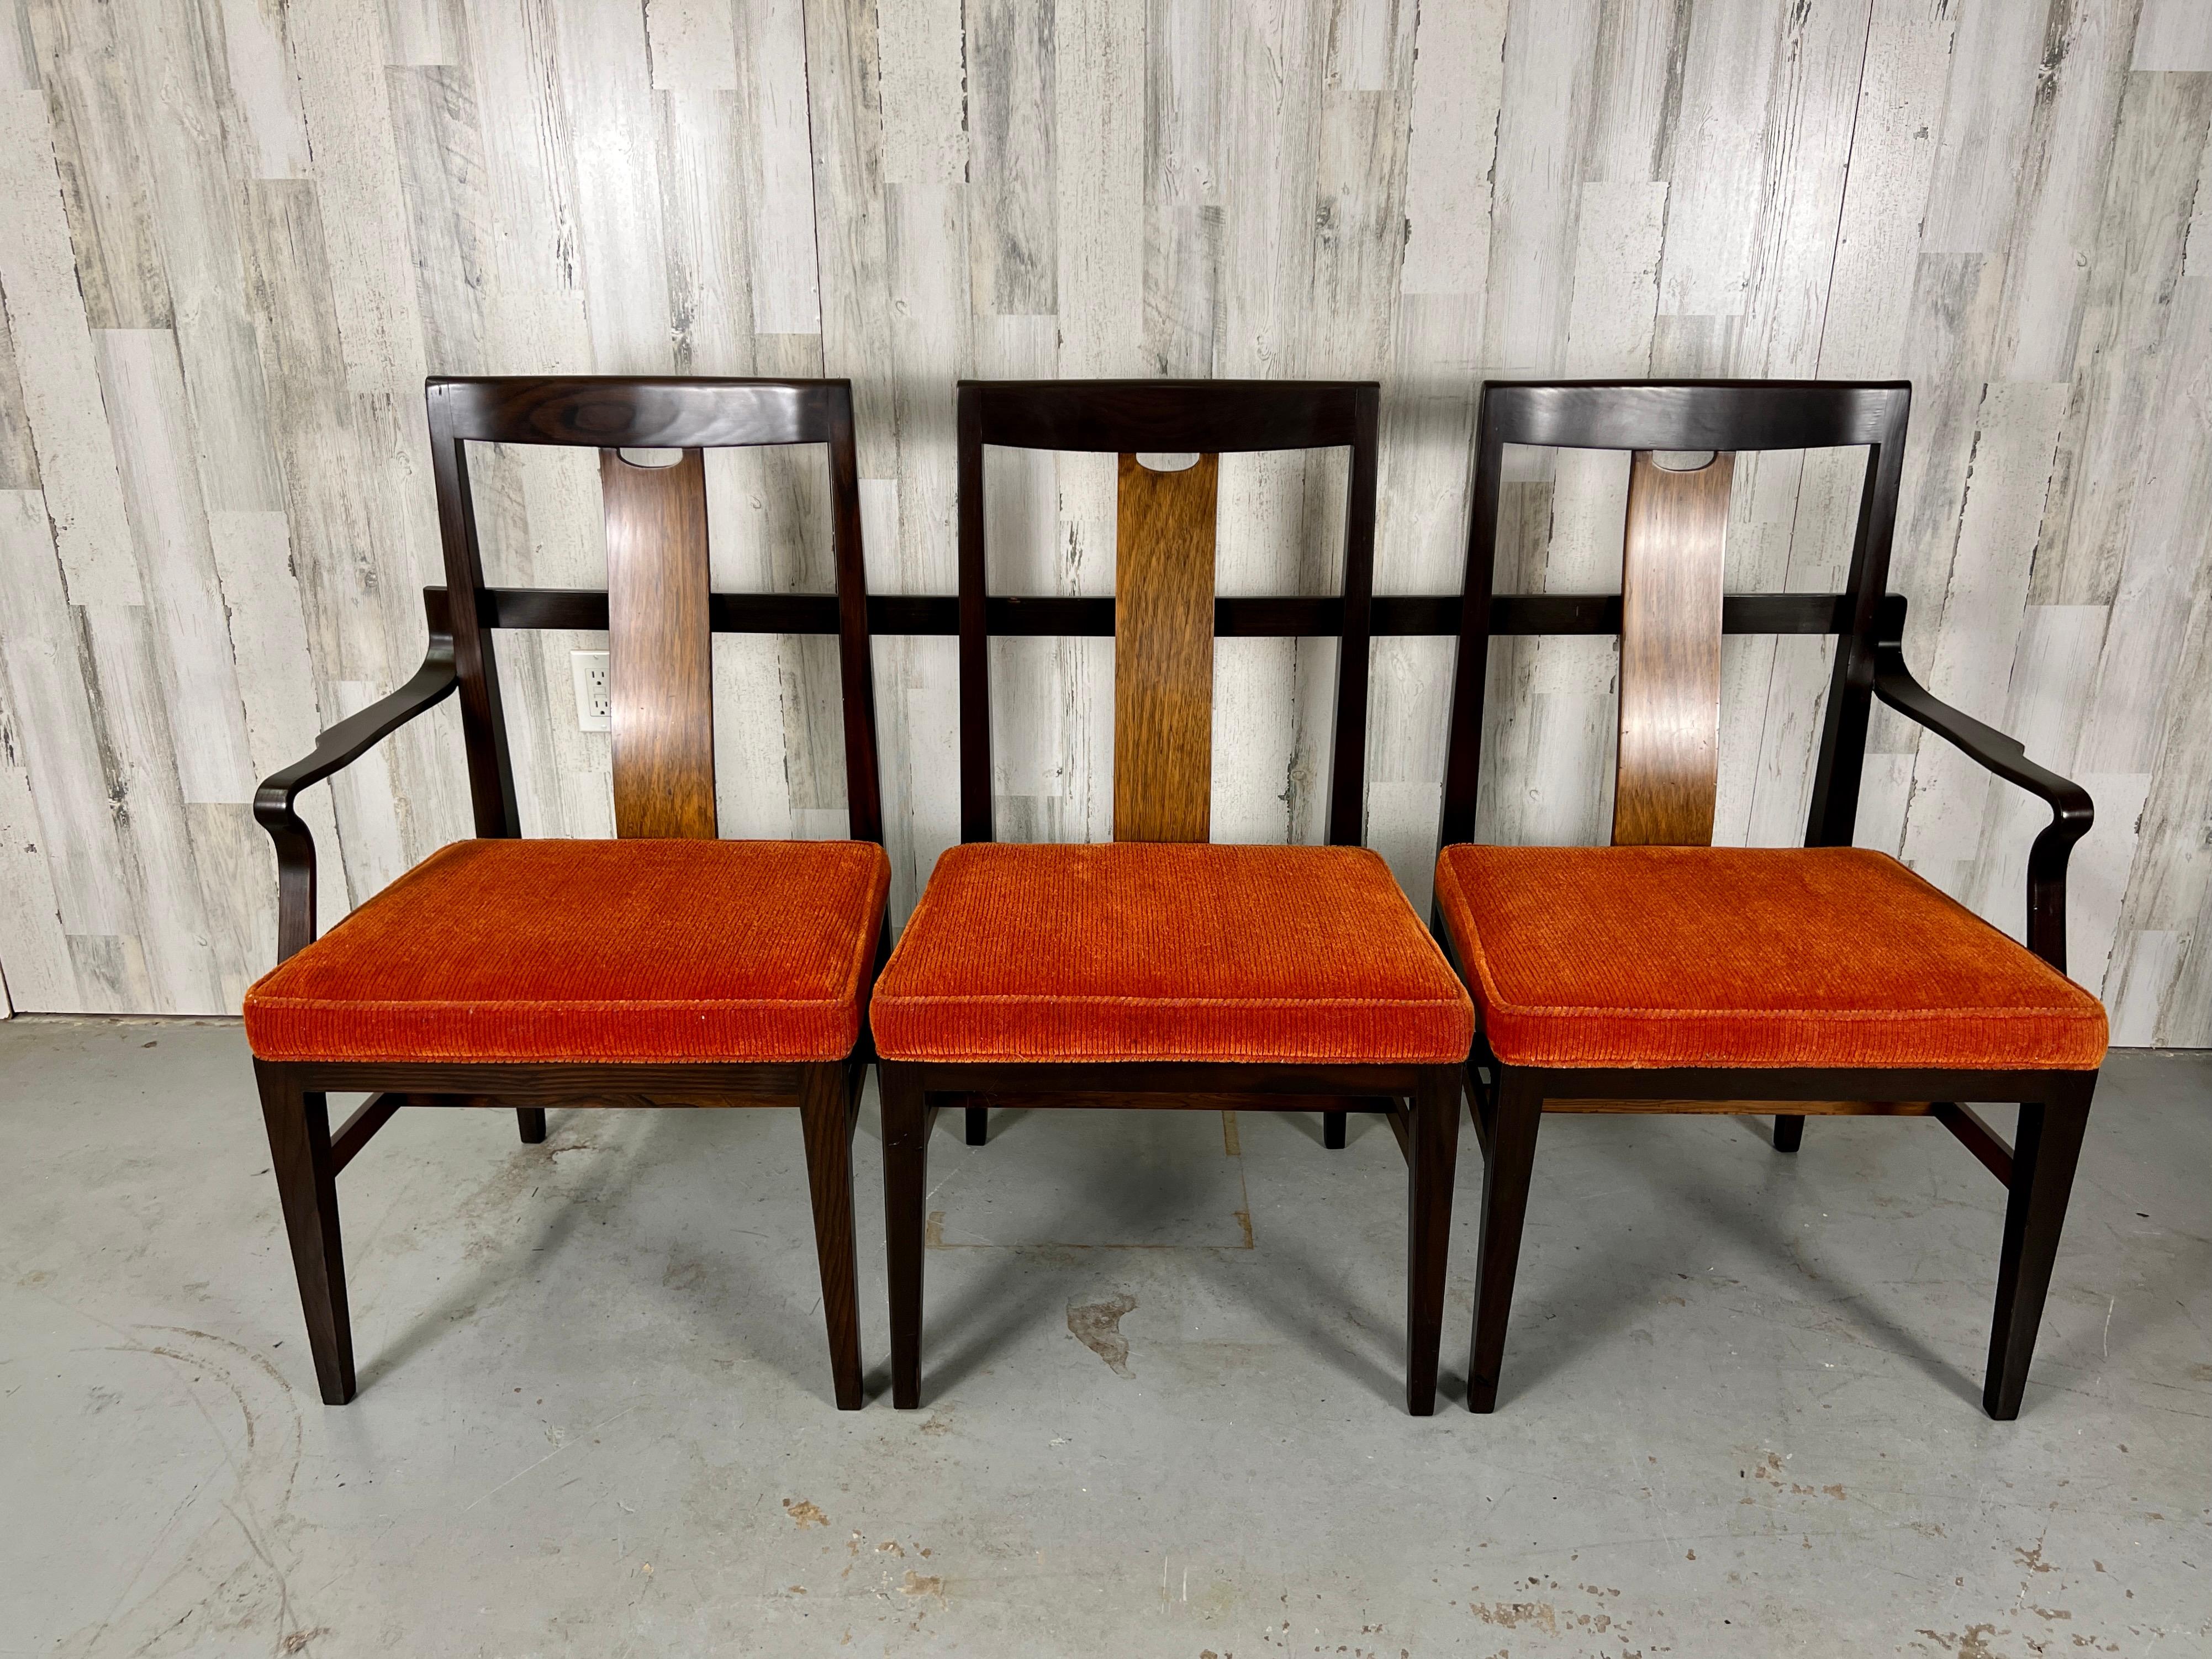 Diese Zusammenstellung von drei Stühlen zu einem Sofa mit Bugholzarmlehnen wurde von Stephens Financial für ihr Büro in Michigan bestellt. Eine neue Polsterung kann gewünscht werden.